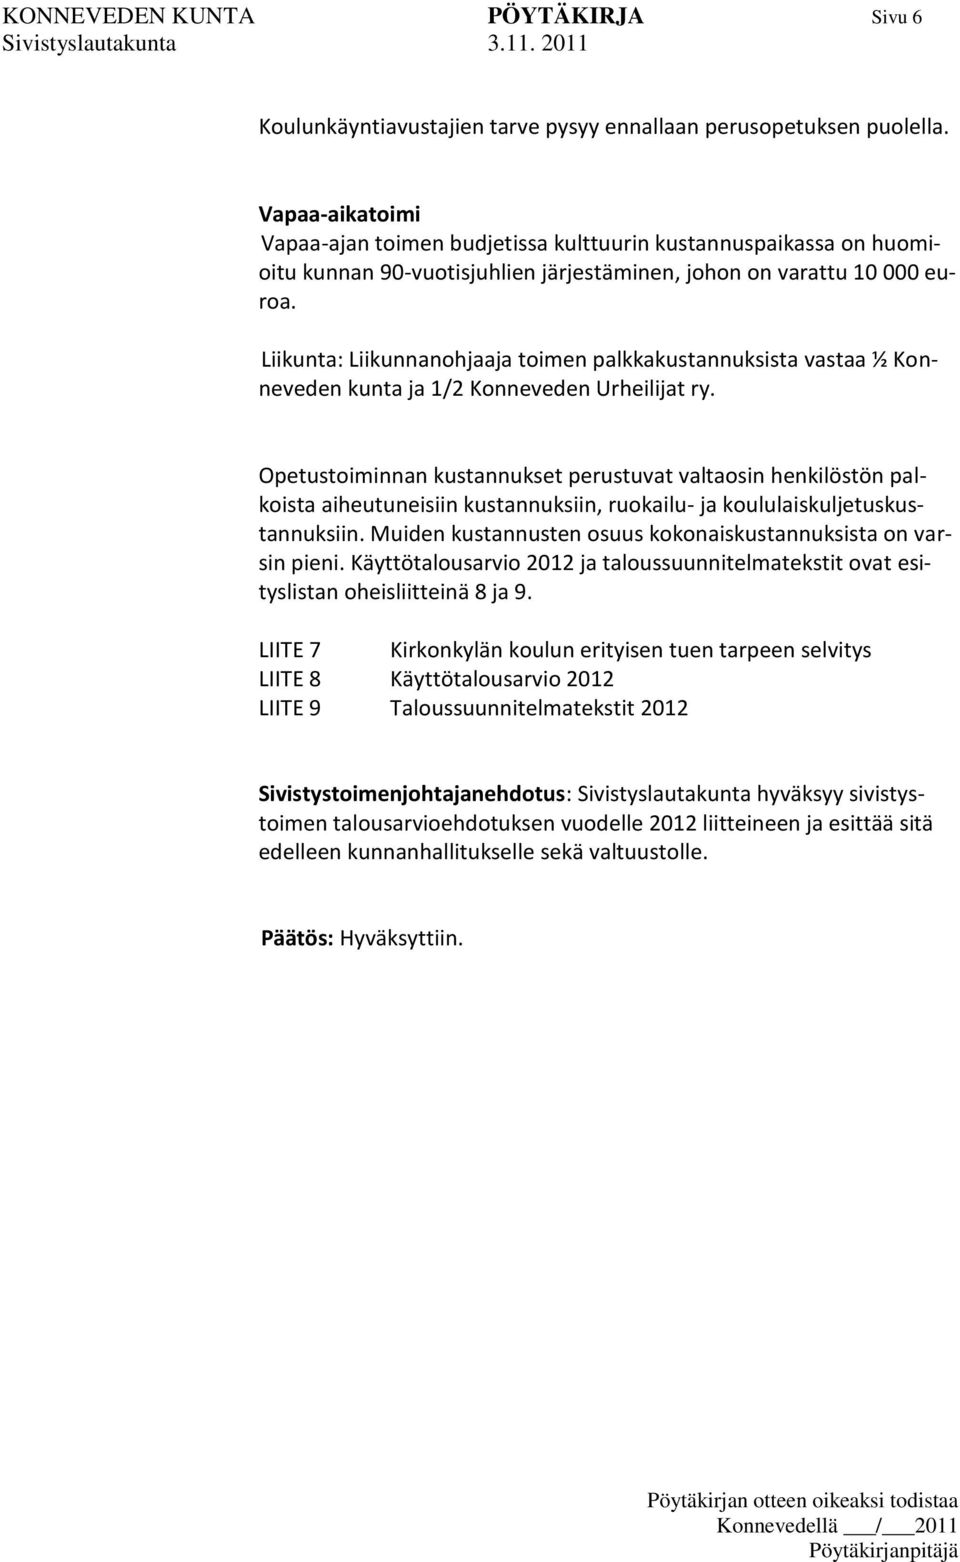 Liikunta: Liikunnanohjaaja toimen palkkakustannuksista vastaa ½ Konneveden kunta ja 1/2 Konneveden Urheilijat ry.